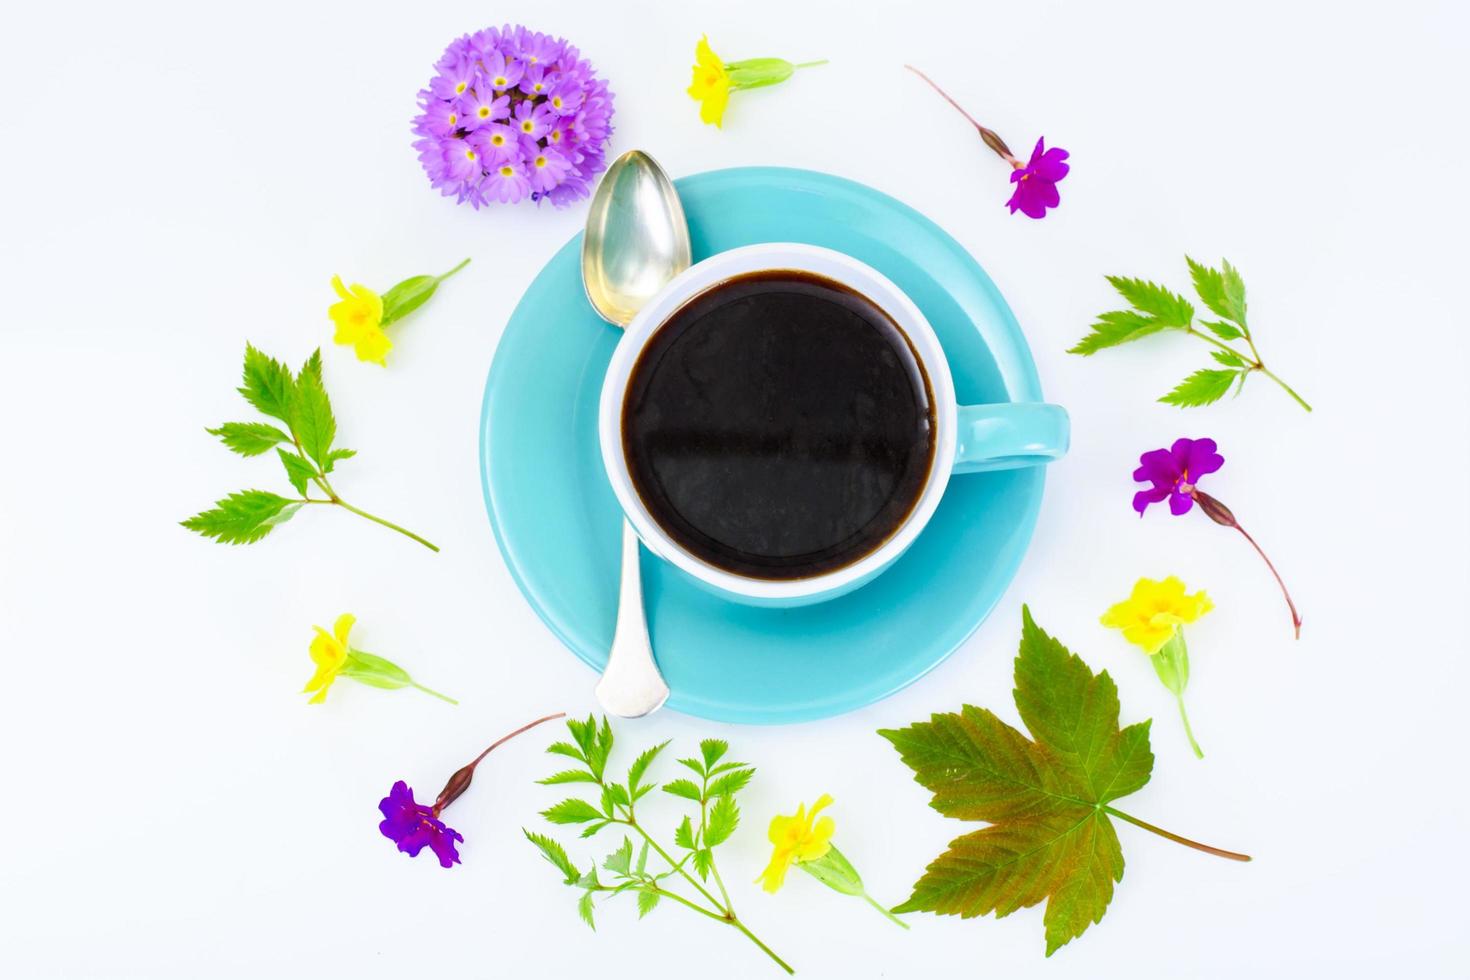 café em uma xícara retro azul com flores foto